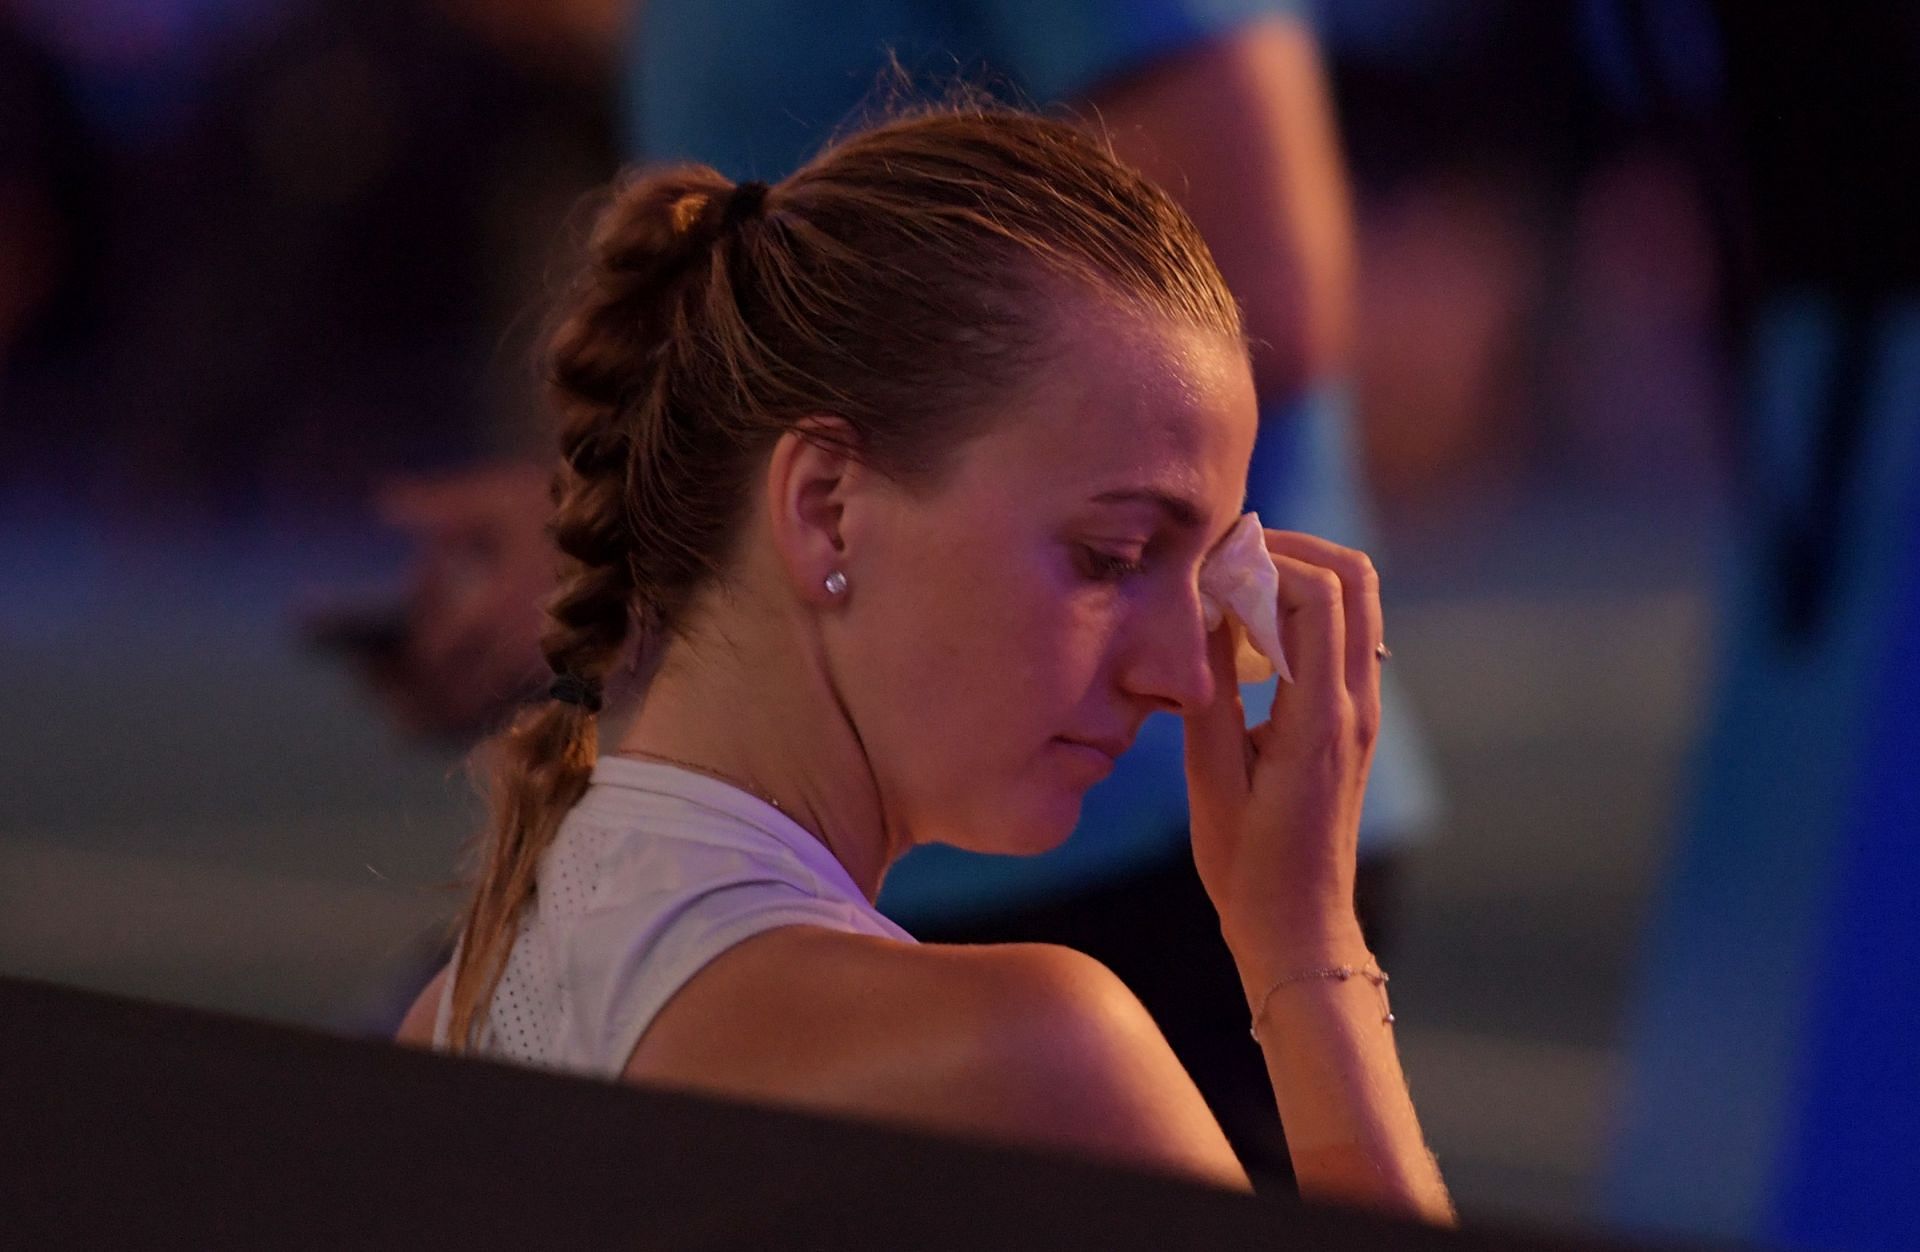 Petra Kvitova at the 2019 Australian Open.